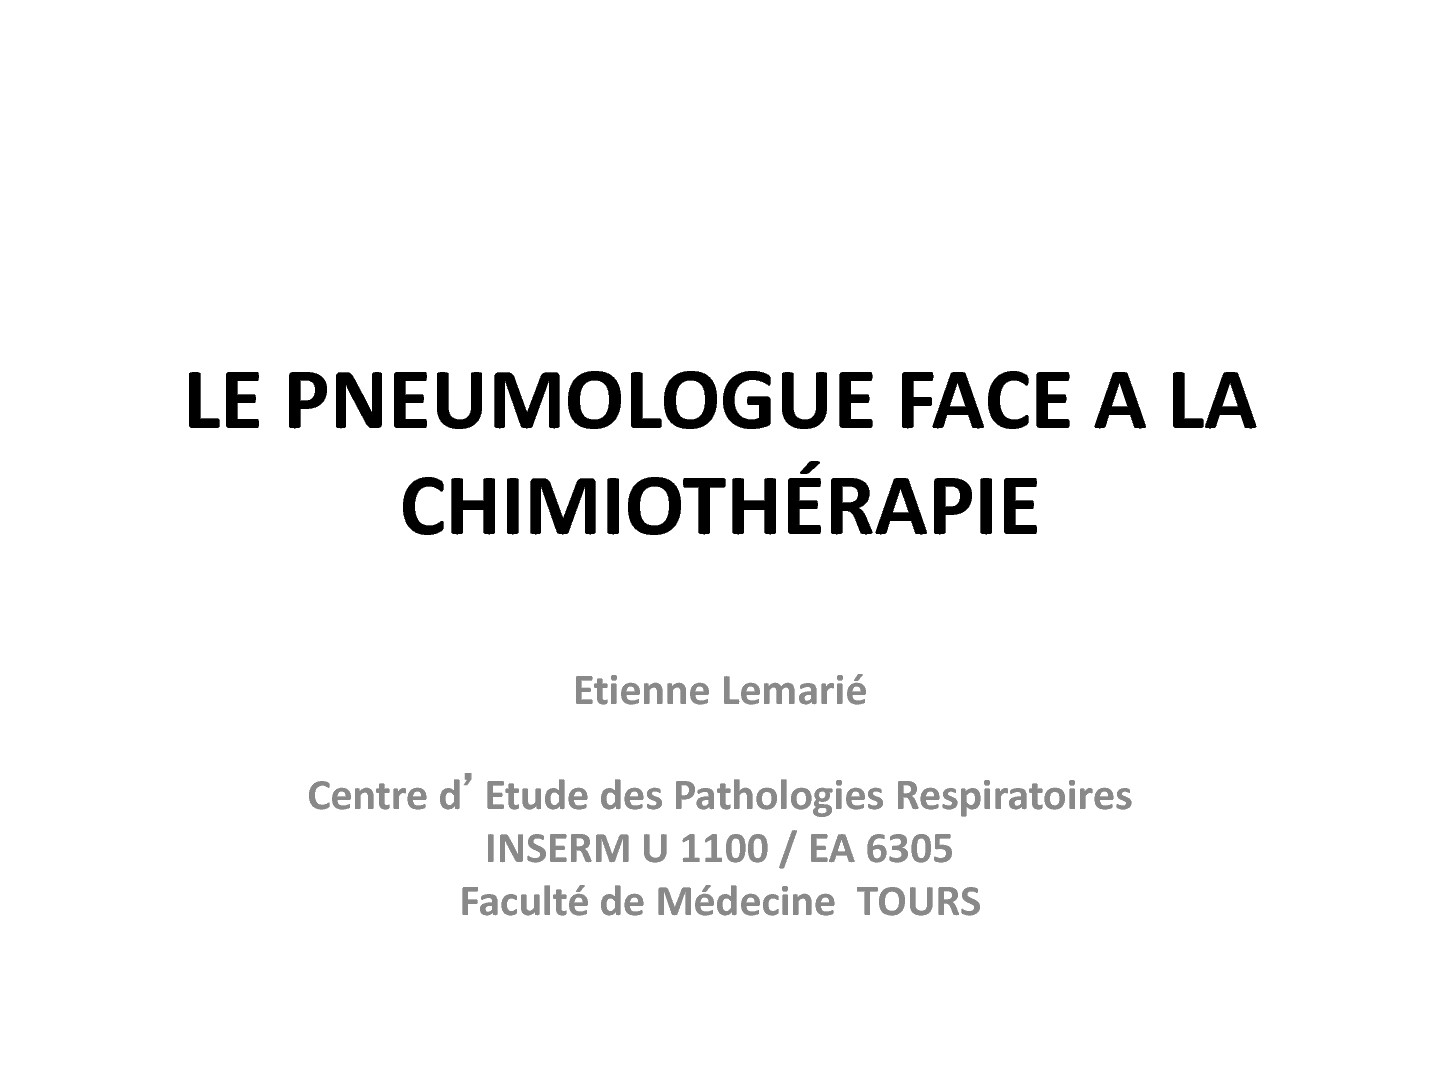 Le Pneumologue face à la Chimiothérapie. Etienne Lemarrié